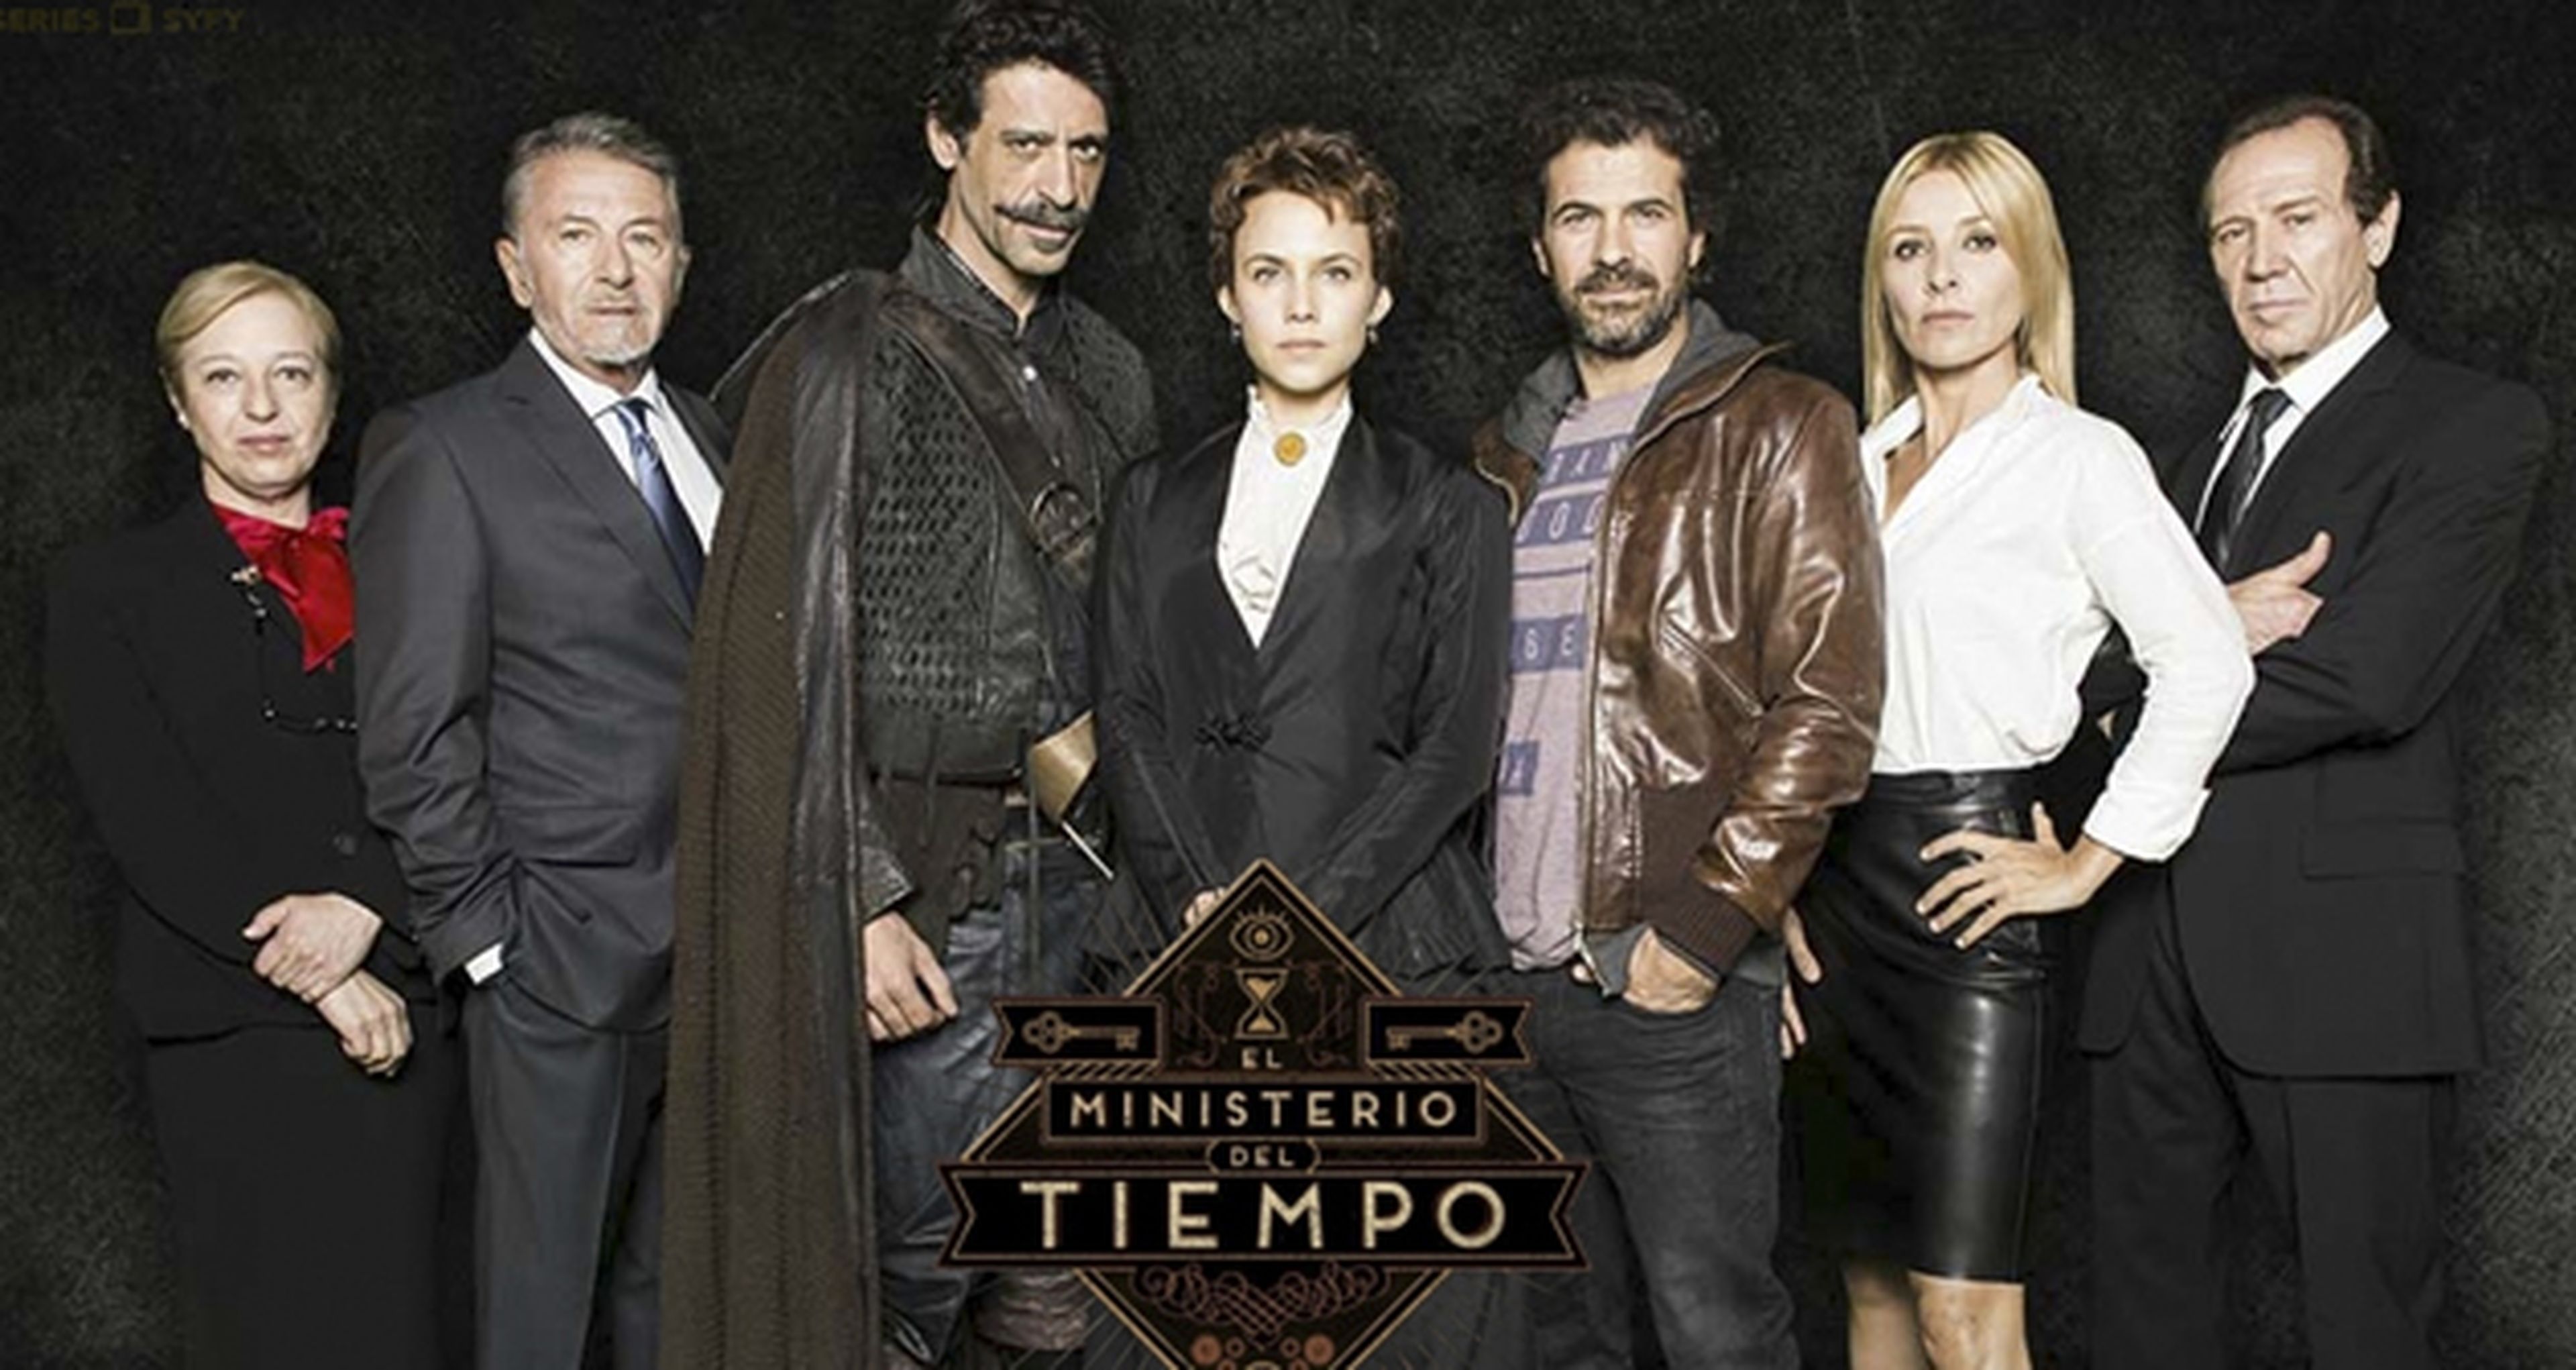 El Ministerio del Tiempo - La temporada 2 llega el 15 de febrero con Napoleón y Houdini